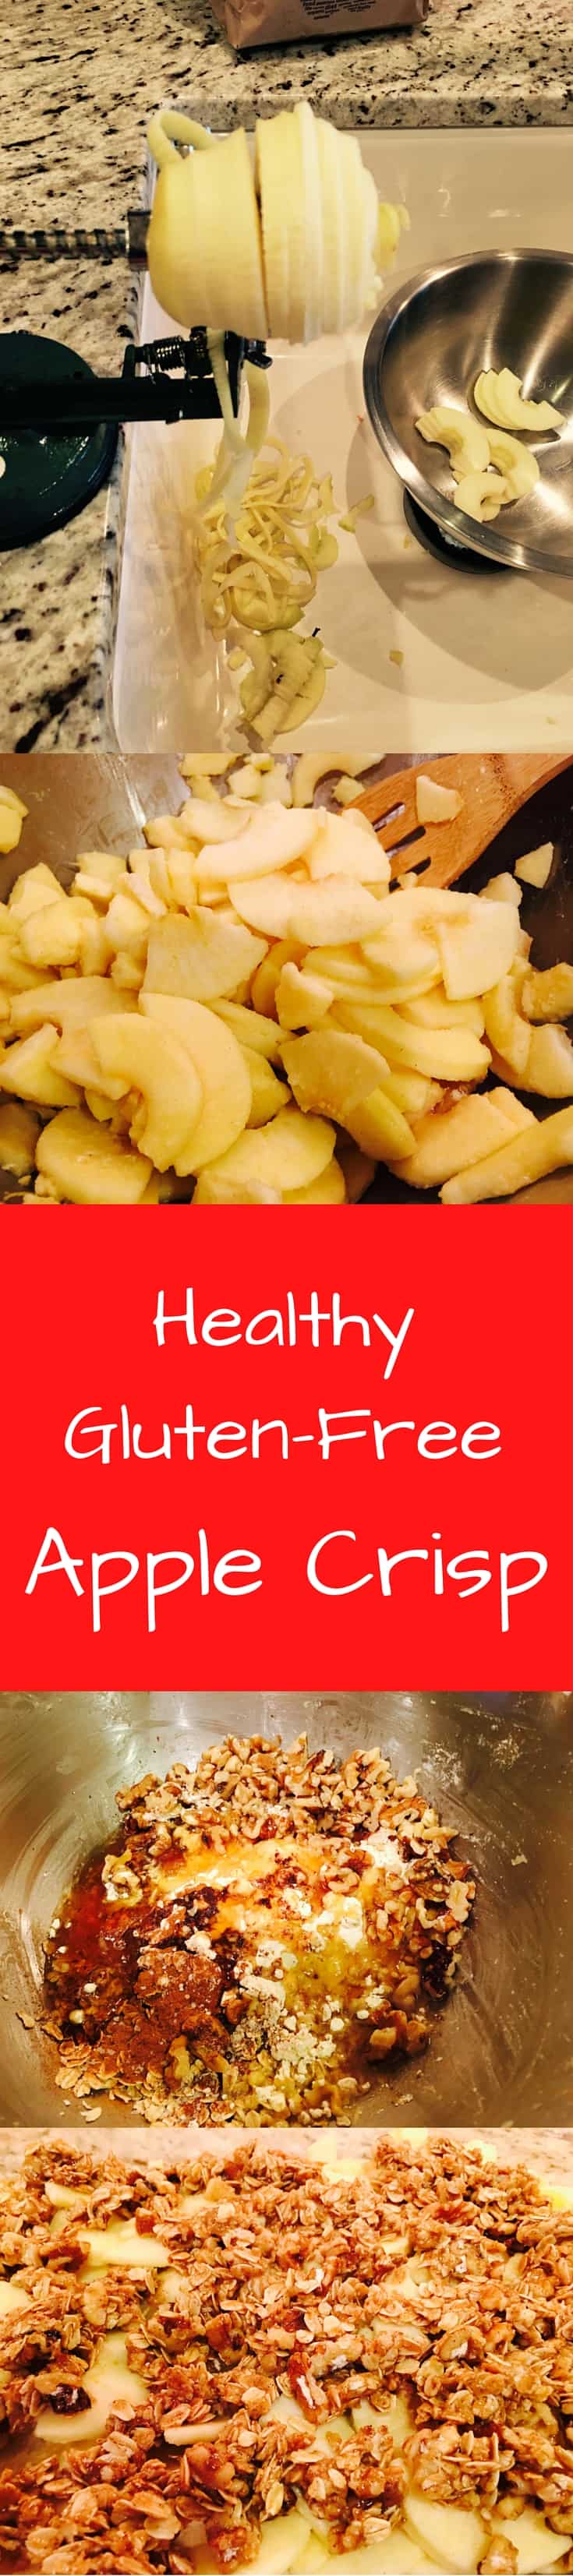 healthy gluten free apple crisp